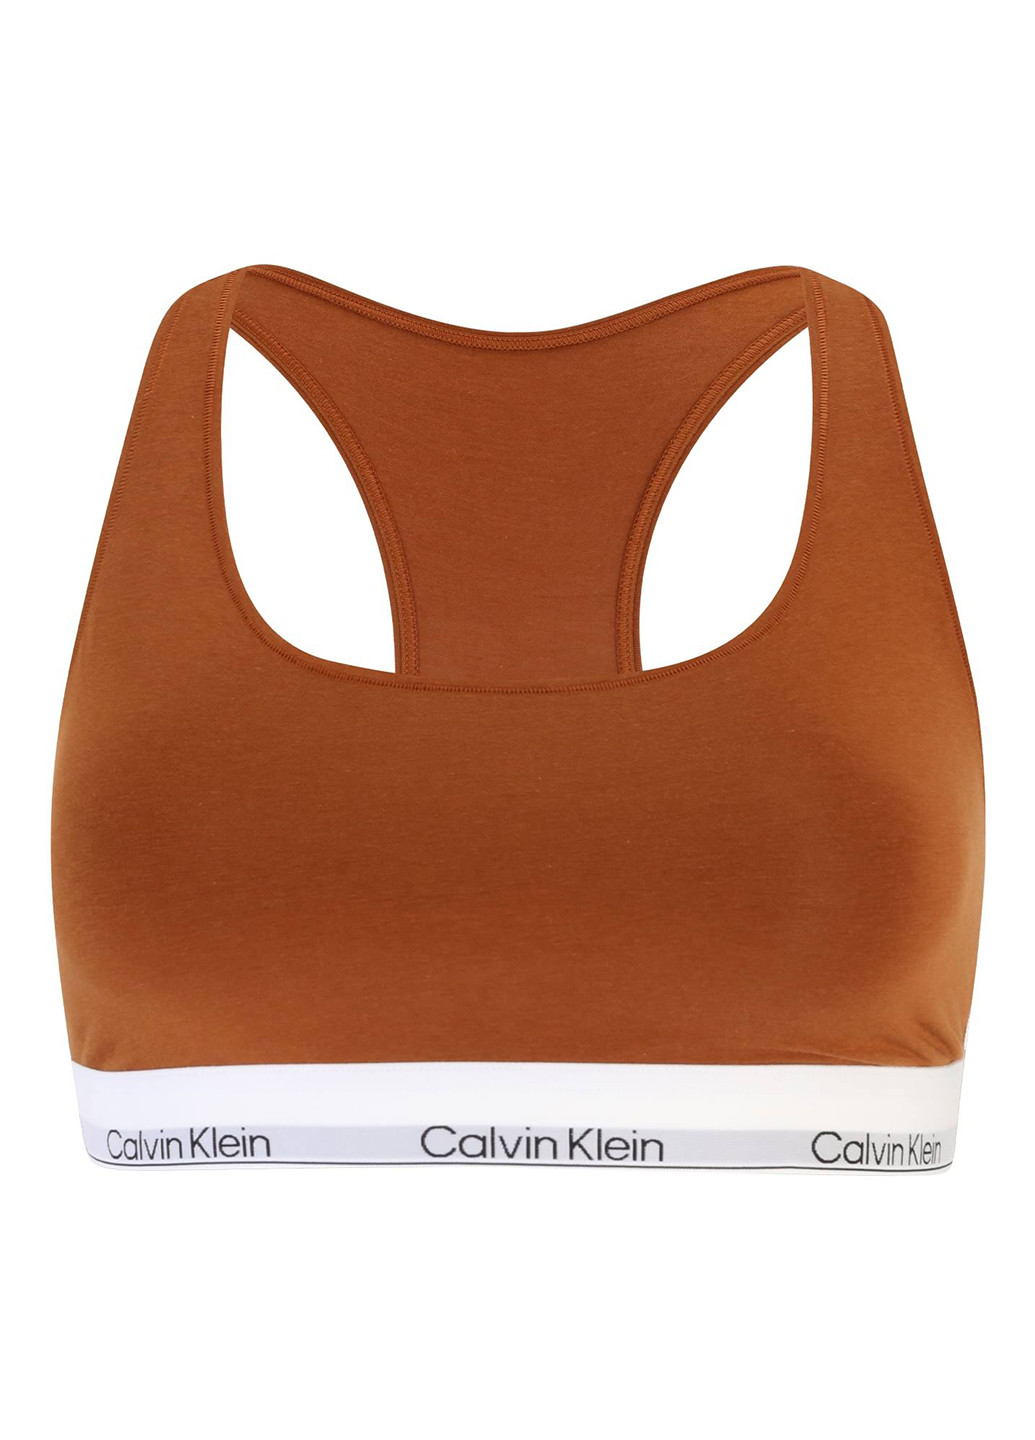 Коричневый топ бюстгальтер Calvin Klein без косточек трикотаж, хлопок